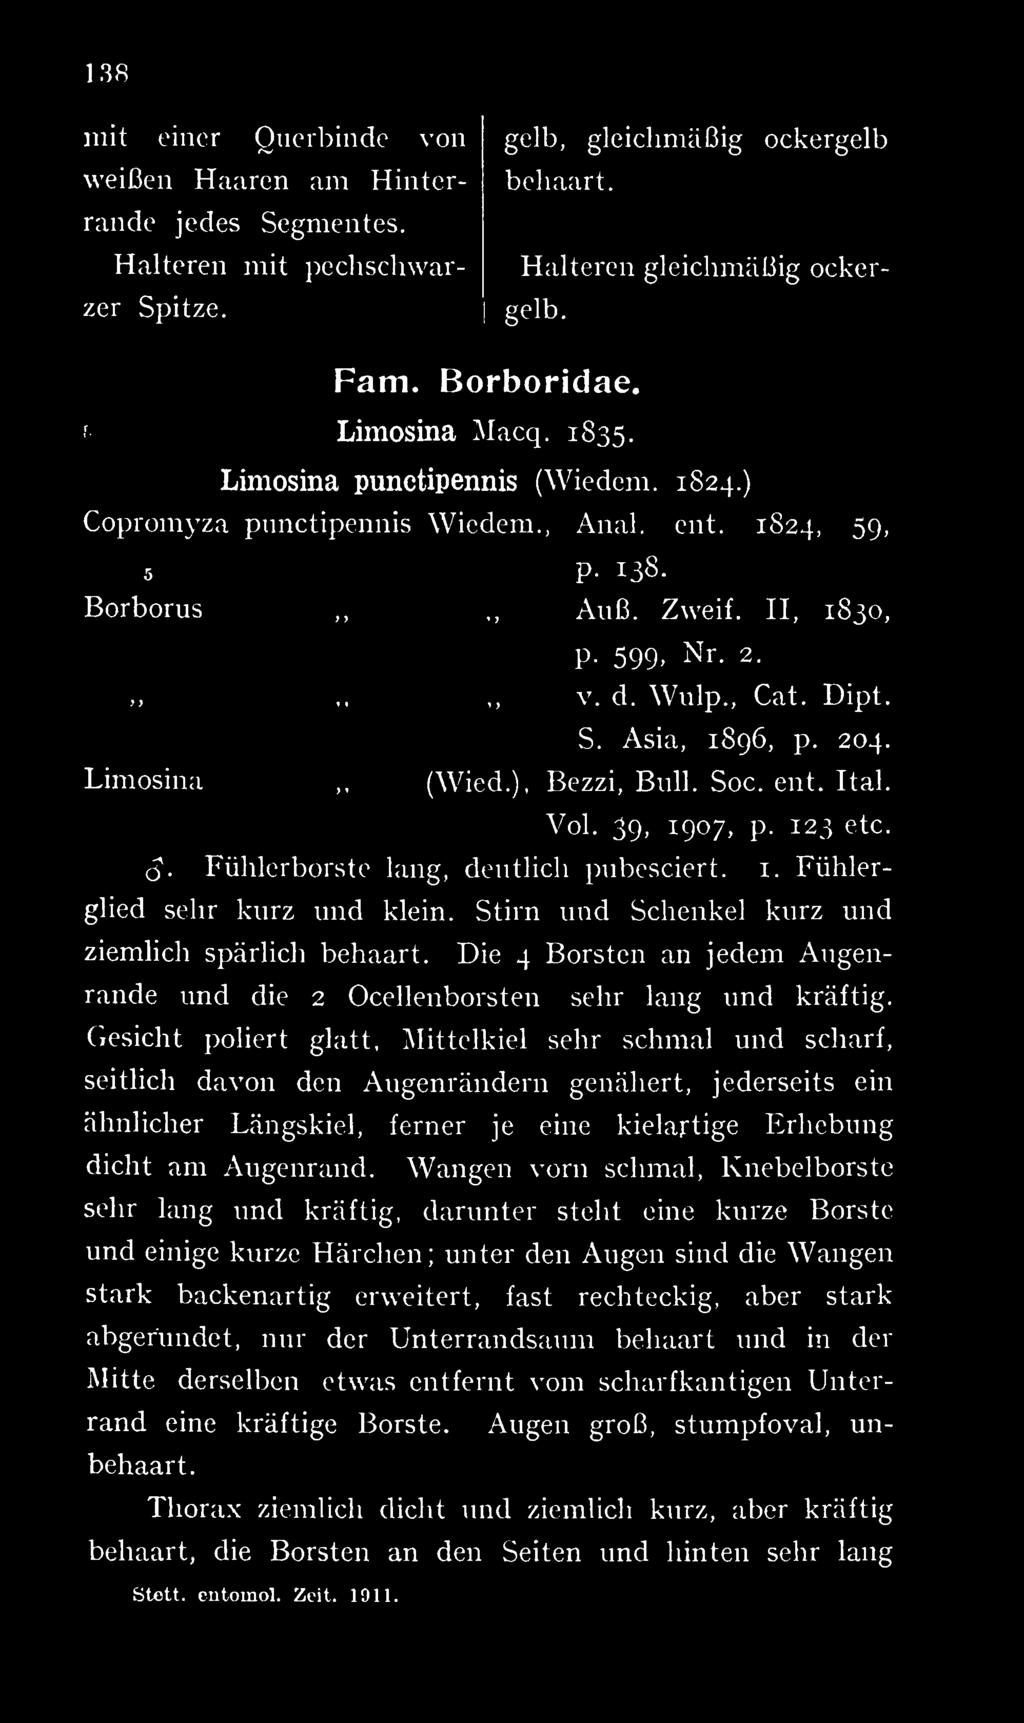 Asia, 1896, p. 204. Limosina (Wied.), Bezzi, Bull. Soc. ent. Ital. Vol. 39, 1907, p. 123 etc. S. Fühlerborstc lang, deutlich pubesciert. i. Fühlerglied sehr kurz und klein.